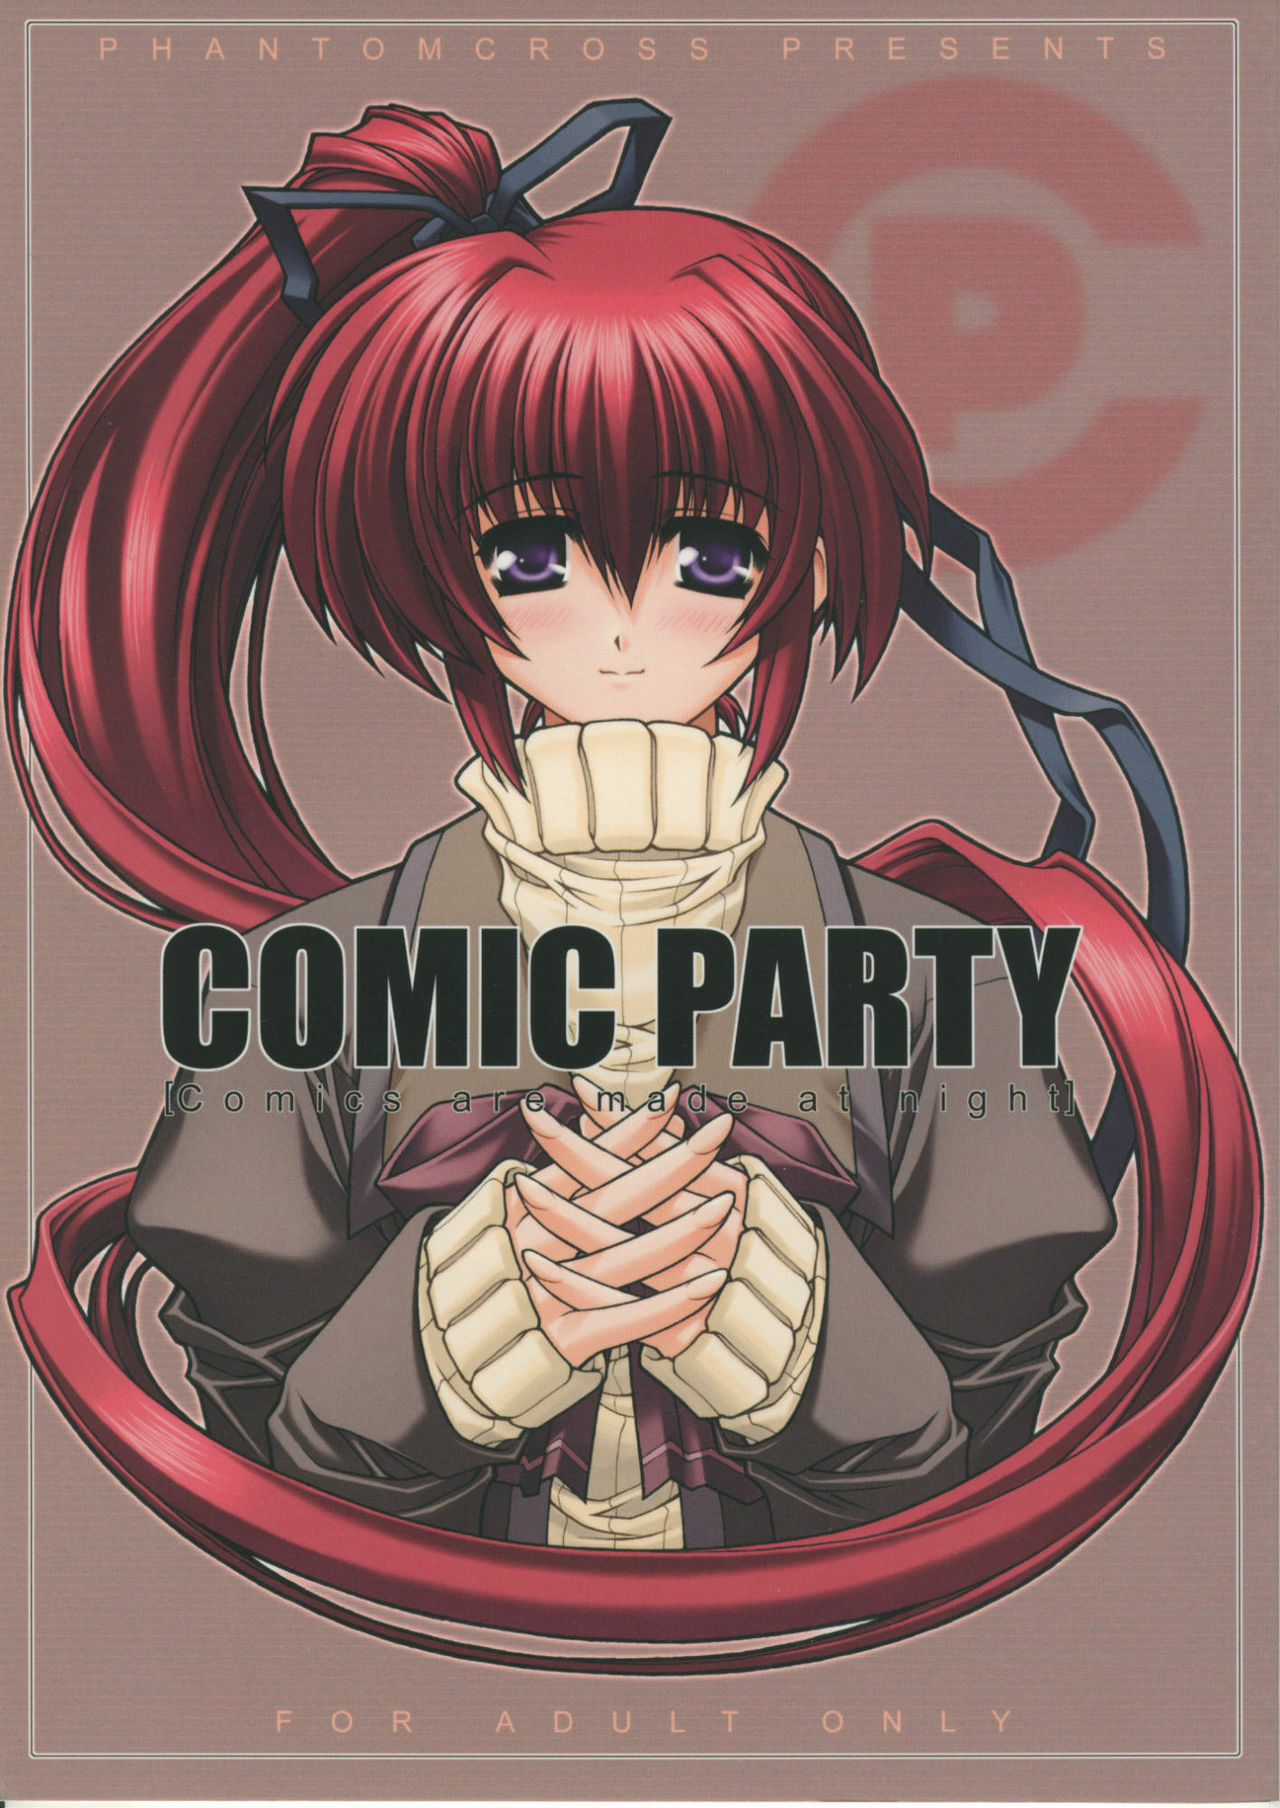 (C59) [Phantom Cross (Miyagi Yasutomo)] Comic Party [Comics are made at night] (Comic Party) page 1 full